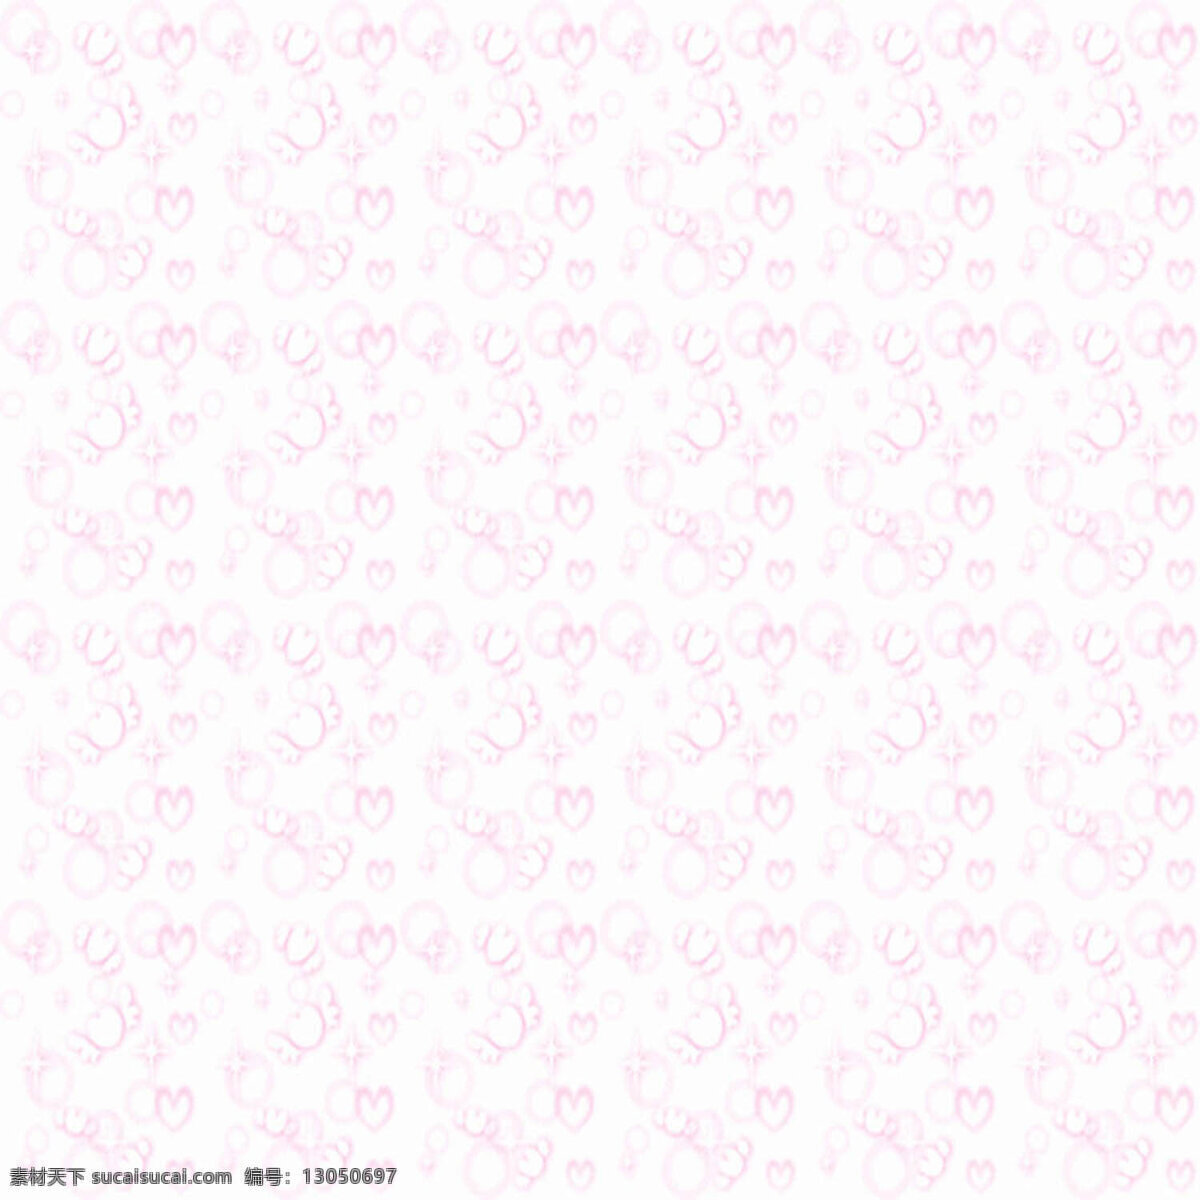 粉红色 纹路 背景 花纹 纹理素材 纹路背景 背景图片